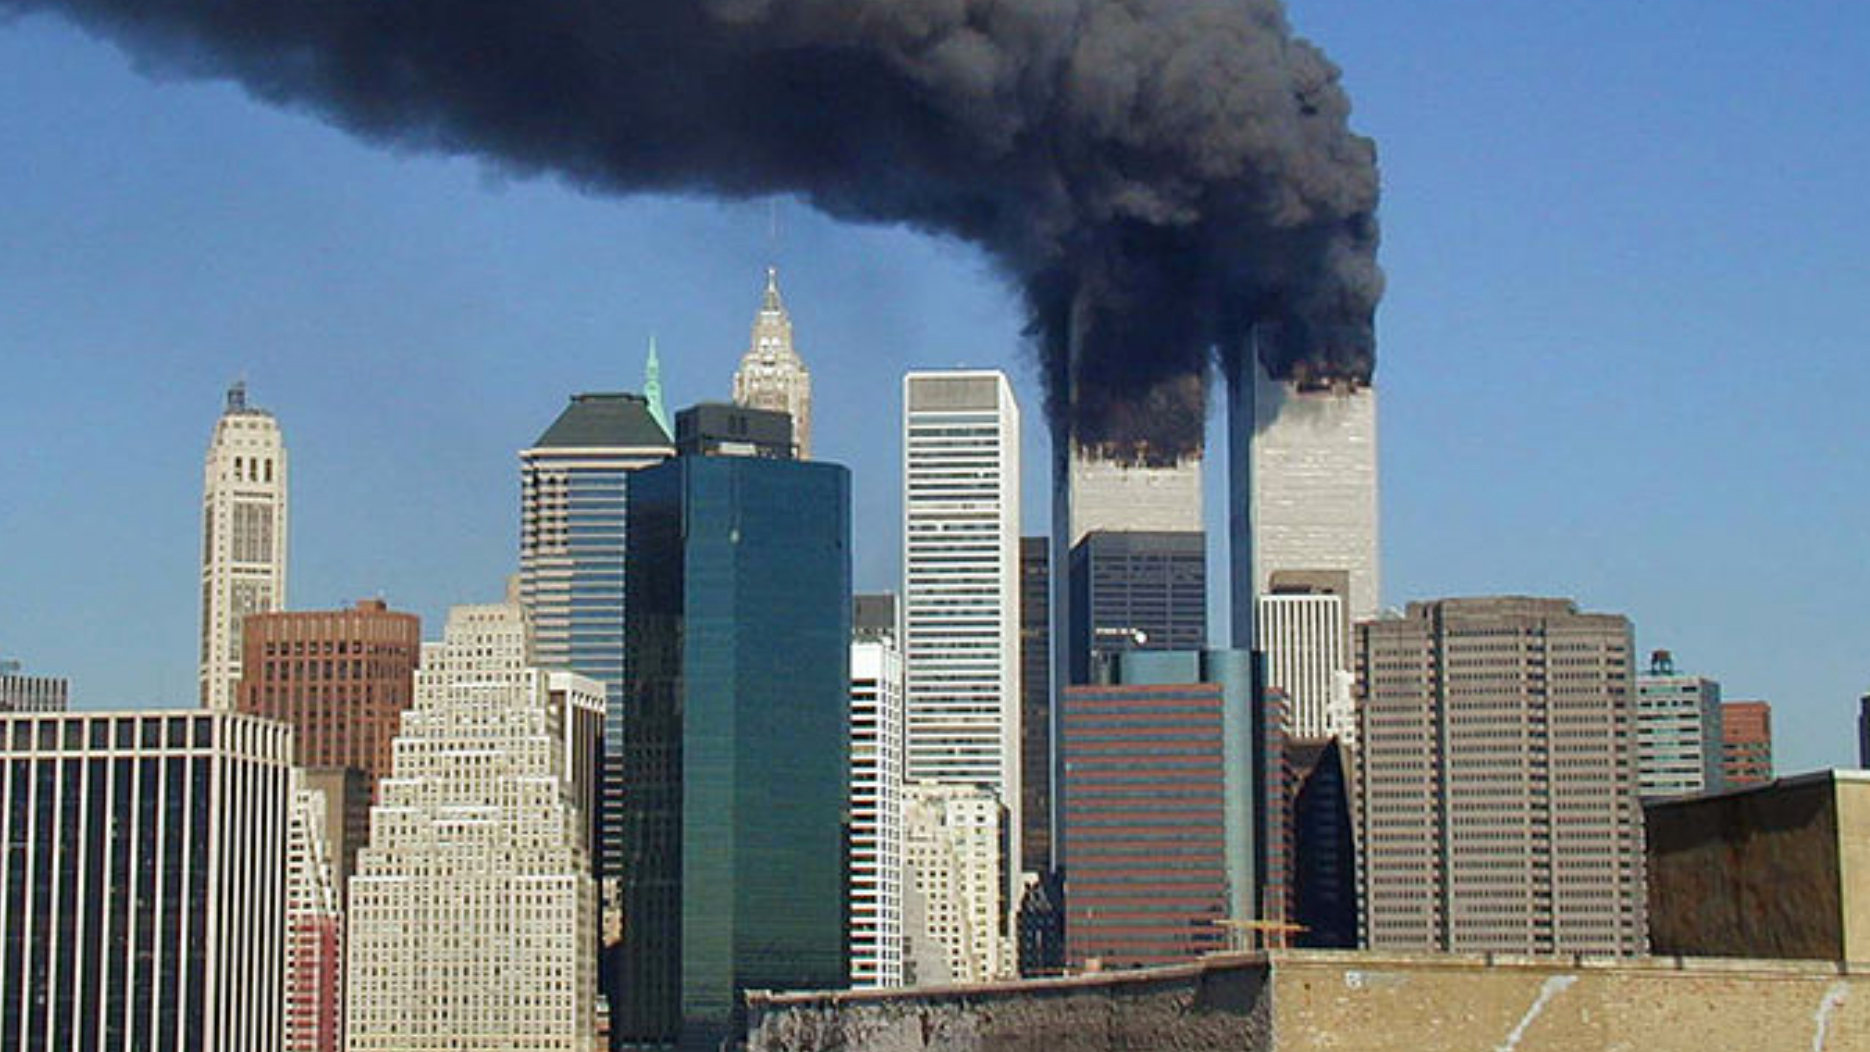 9/11 September 11